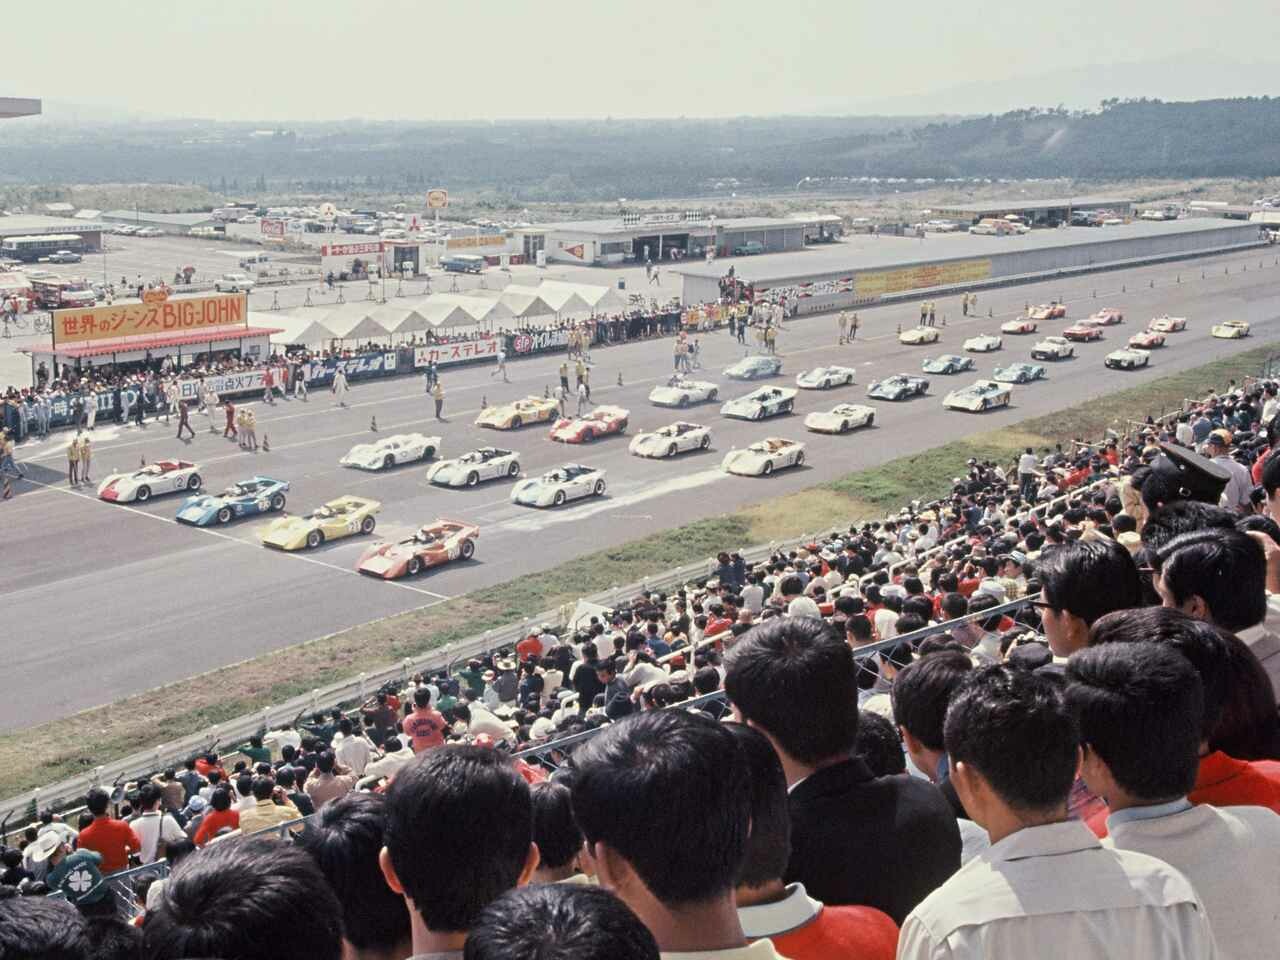 【1969年日本グランプリの記憶(1)】1969年10月、富士で行われたそのレースは世界最大級のイベントだった